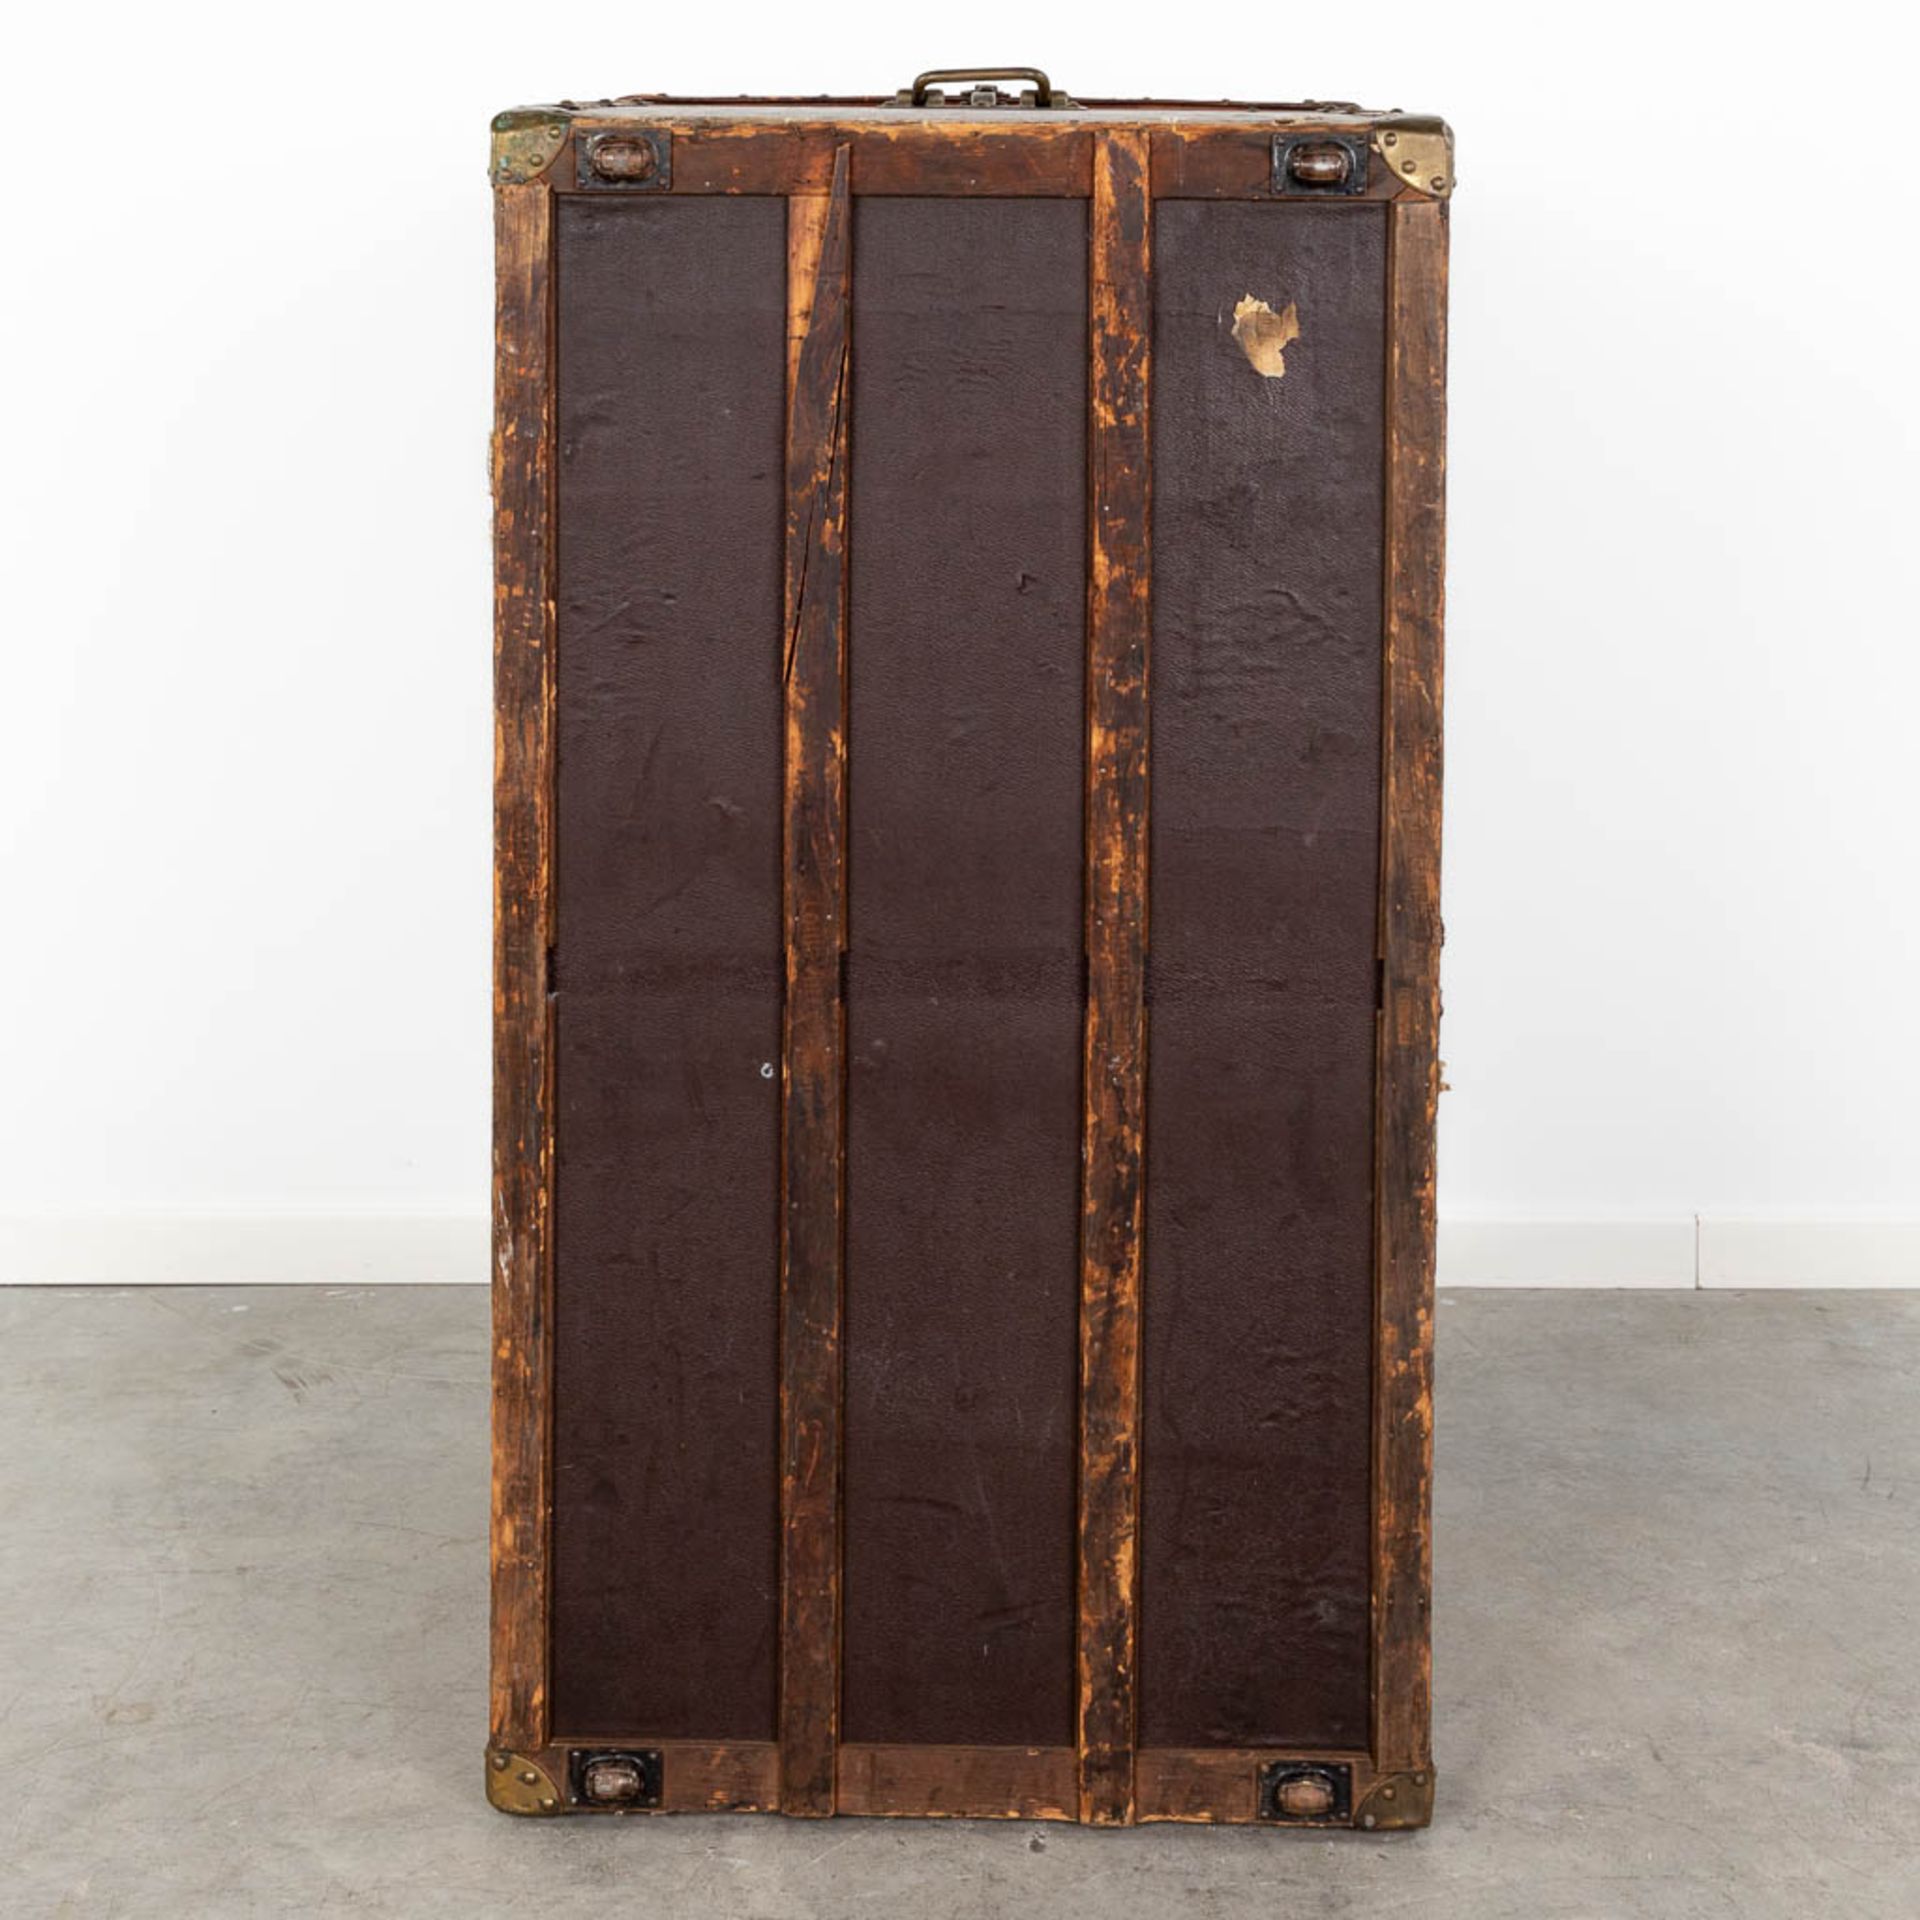 Louis Vuitton, a large and antique suitcase. (L:63 x W:113 x H:72 cm) - Bild 8 aus 25